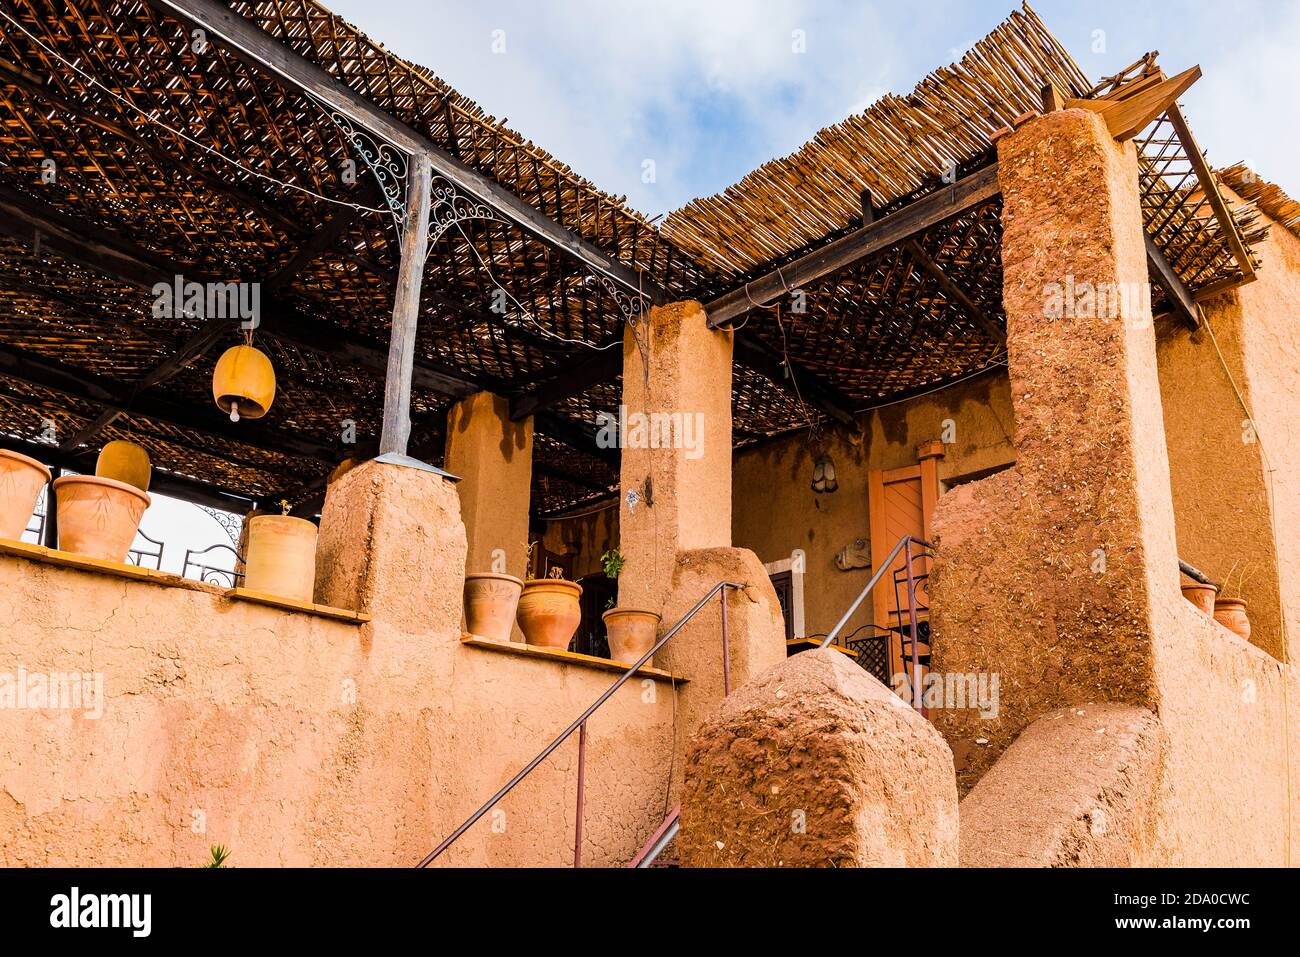 La Kasbah de Taourirt en brique de boue. Ouarzazate, Drâa-Tafilalet, Maroc, Afrique du Nord Banque D'Images